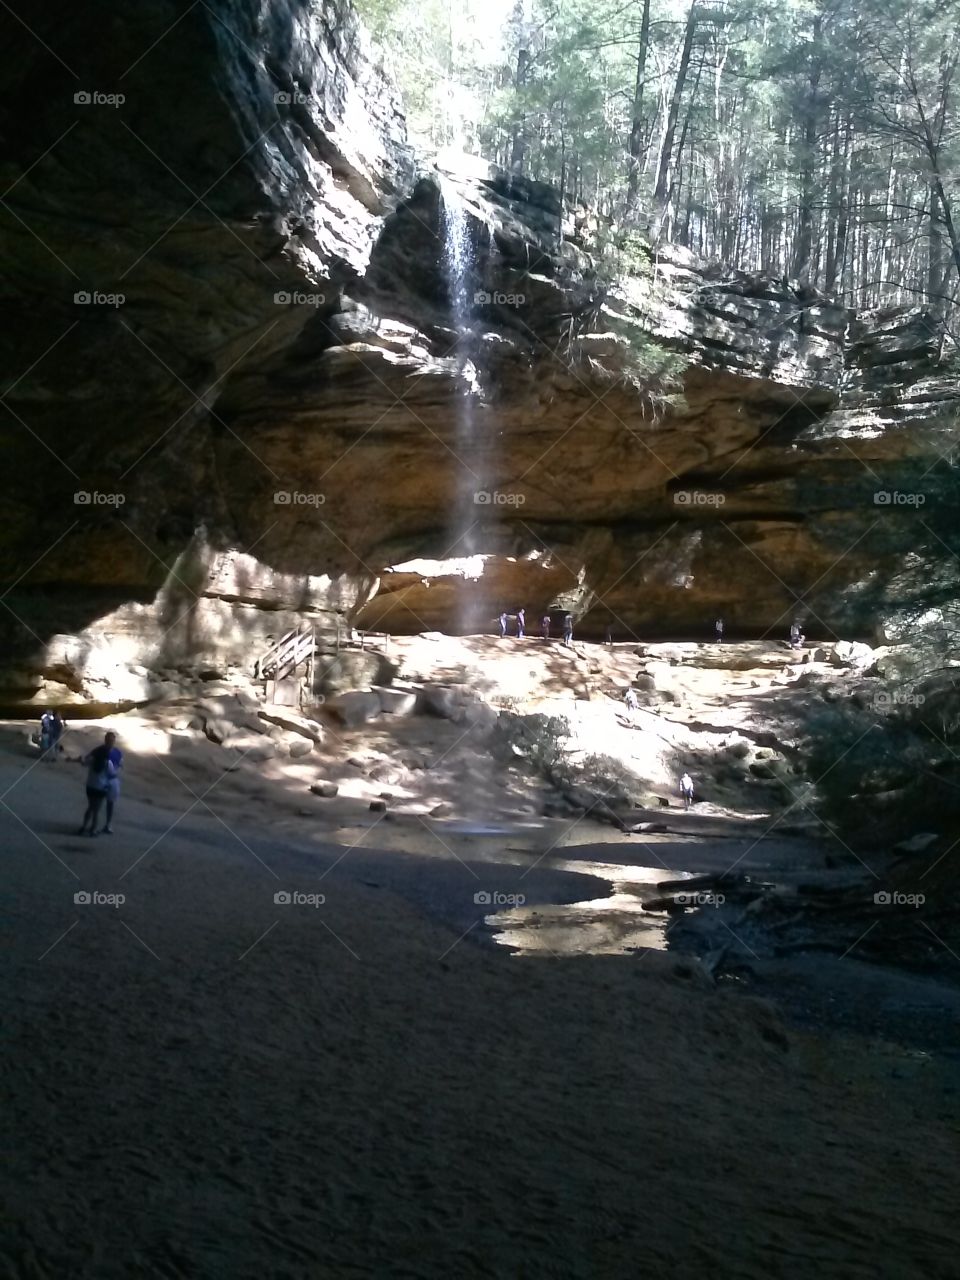 Ash Cave, Ohio